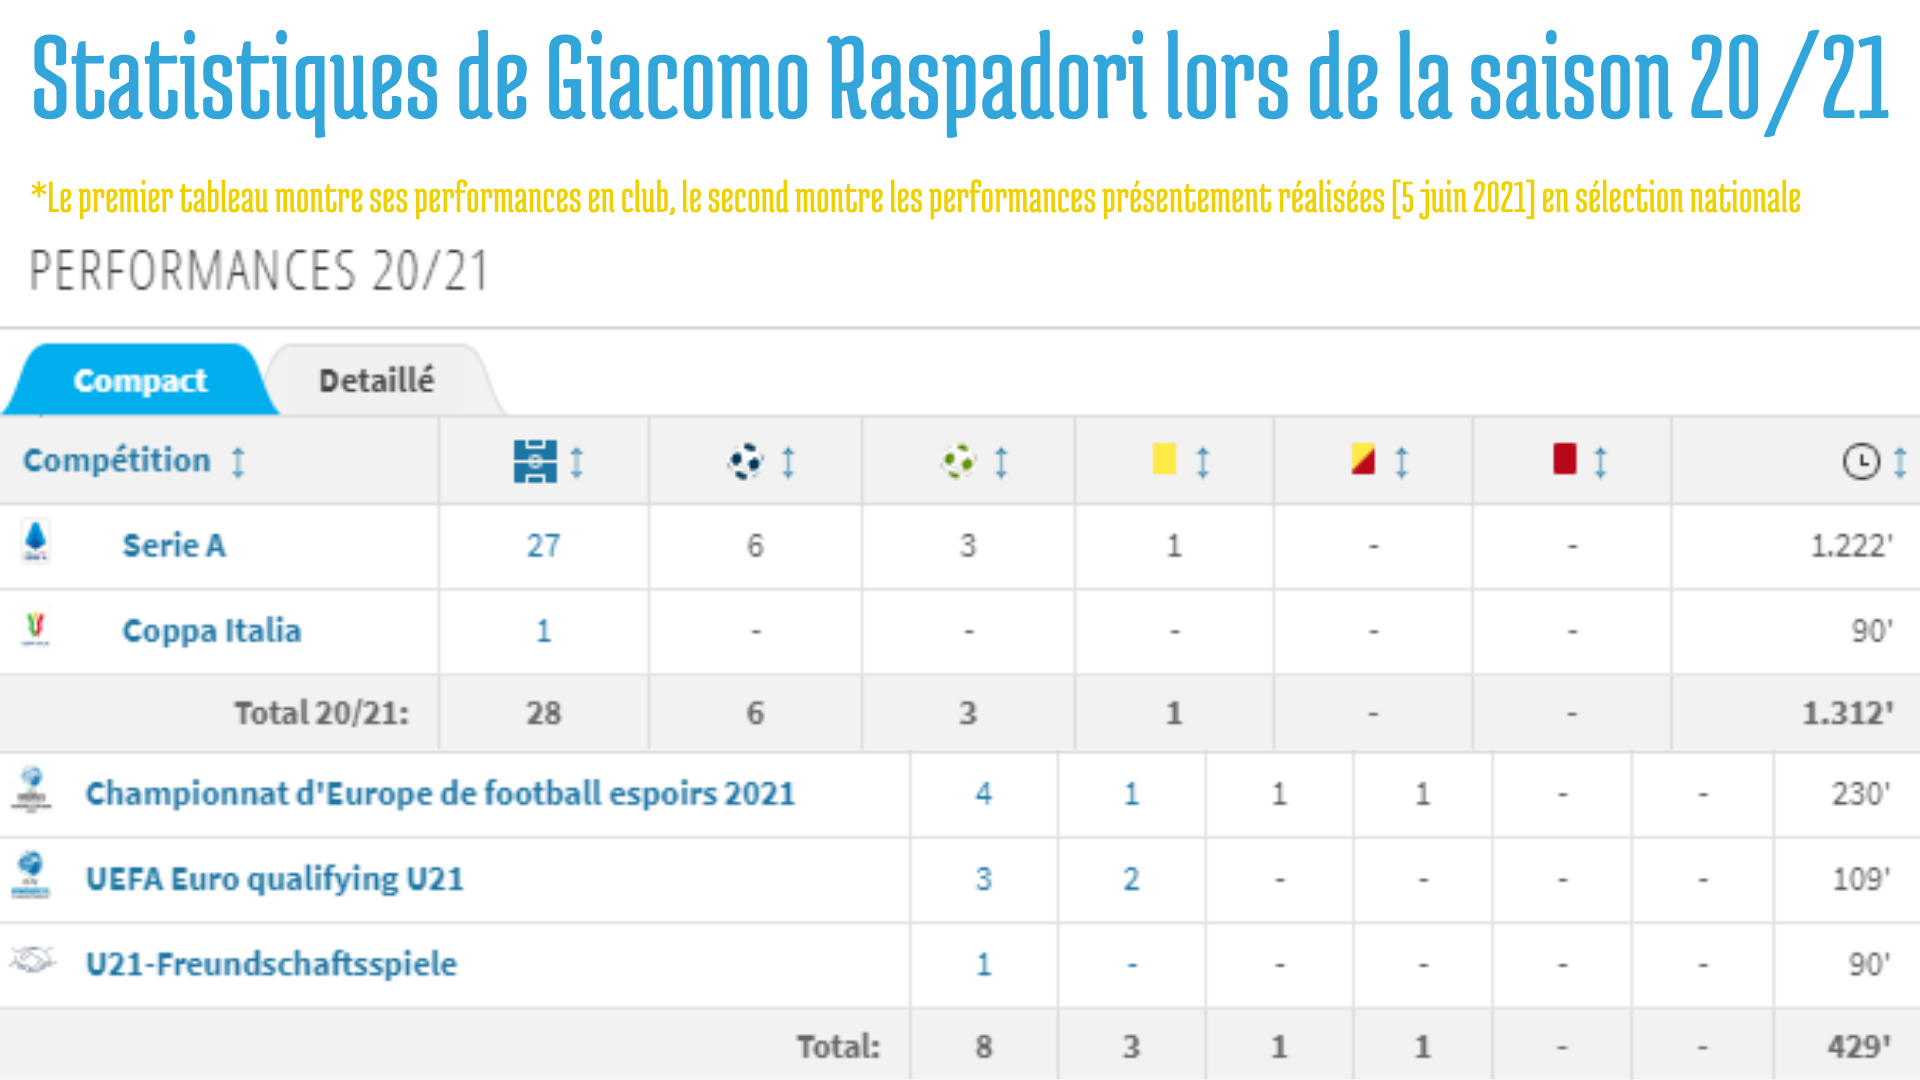 Statistiques de Giacomo Raspadori sur la saison en cours.